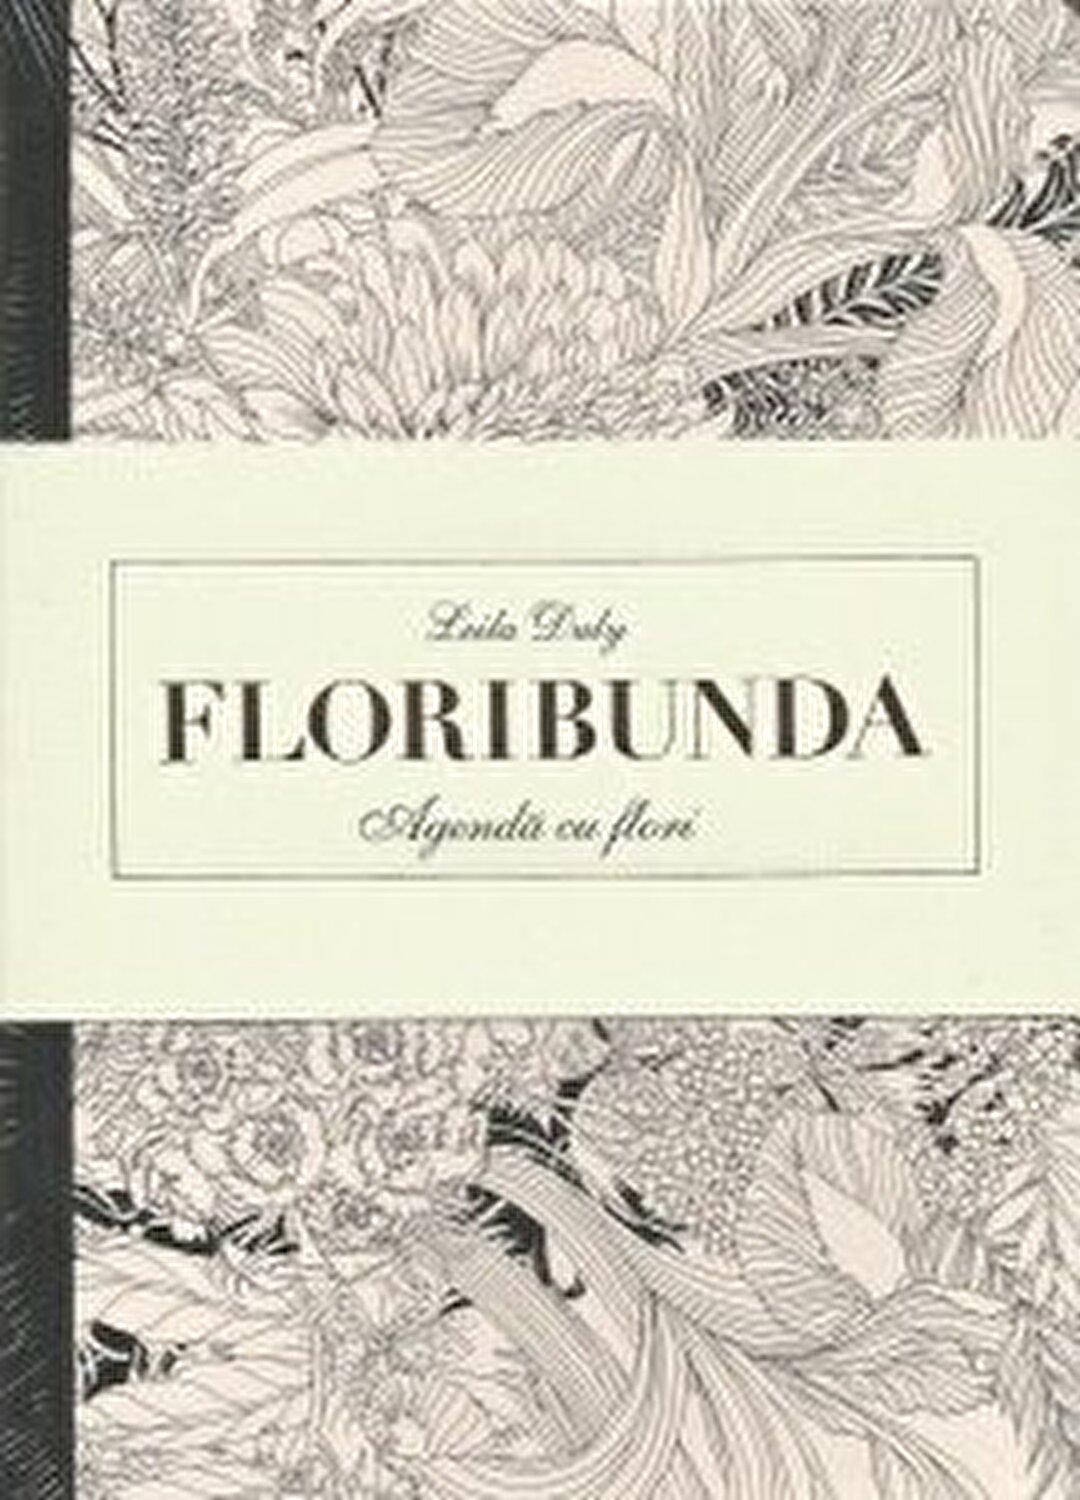 Floribunda – Agenda de colorat cu flori | Leida Duly Agenda